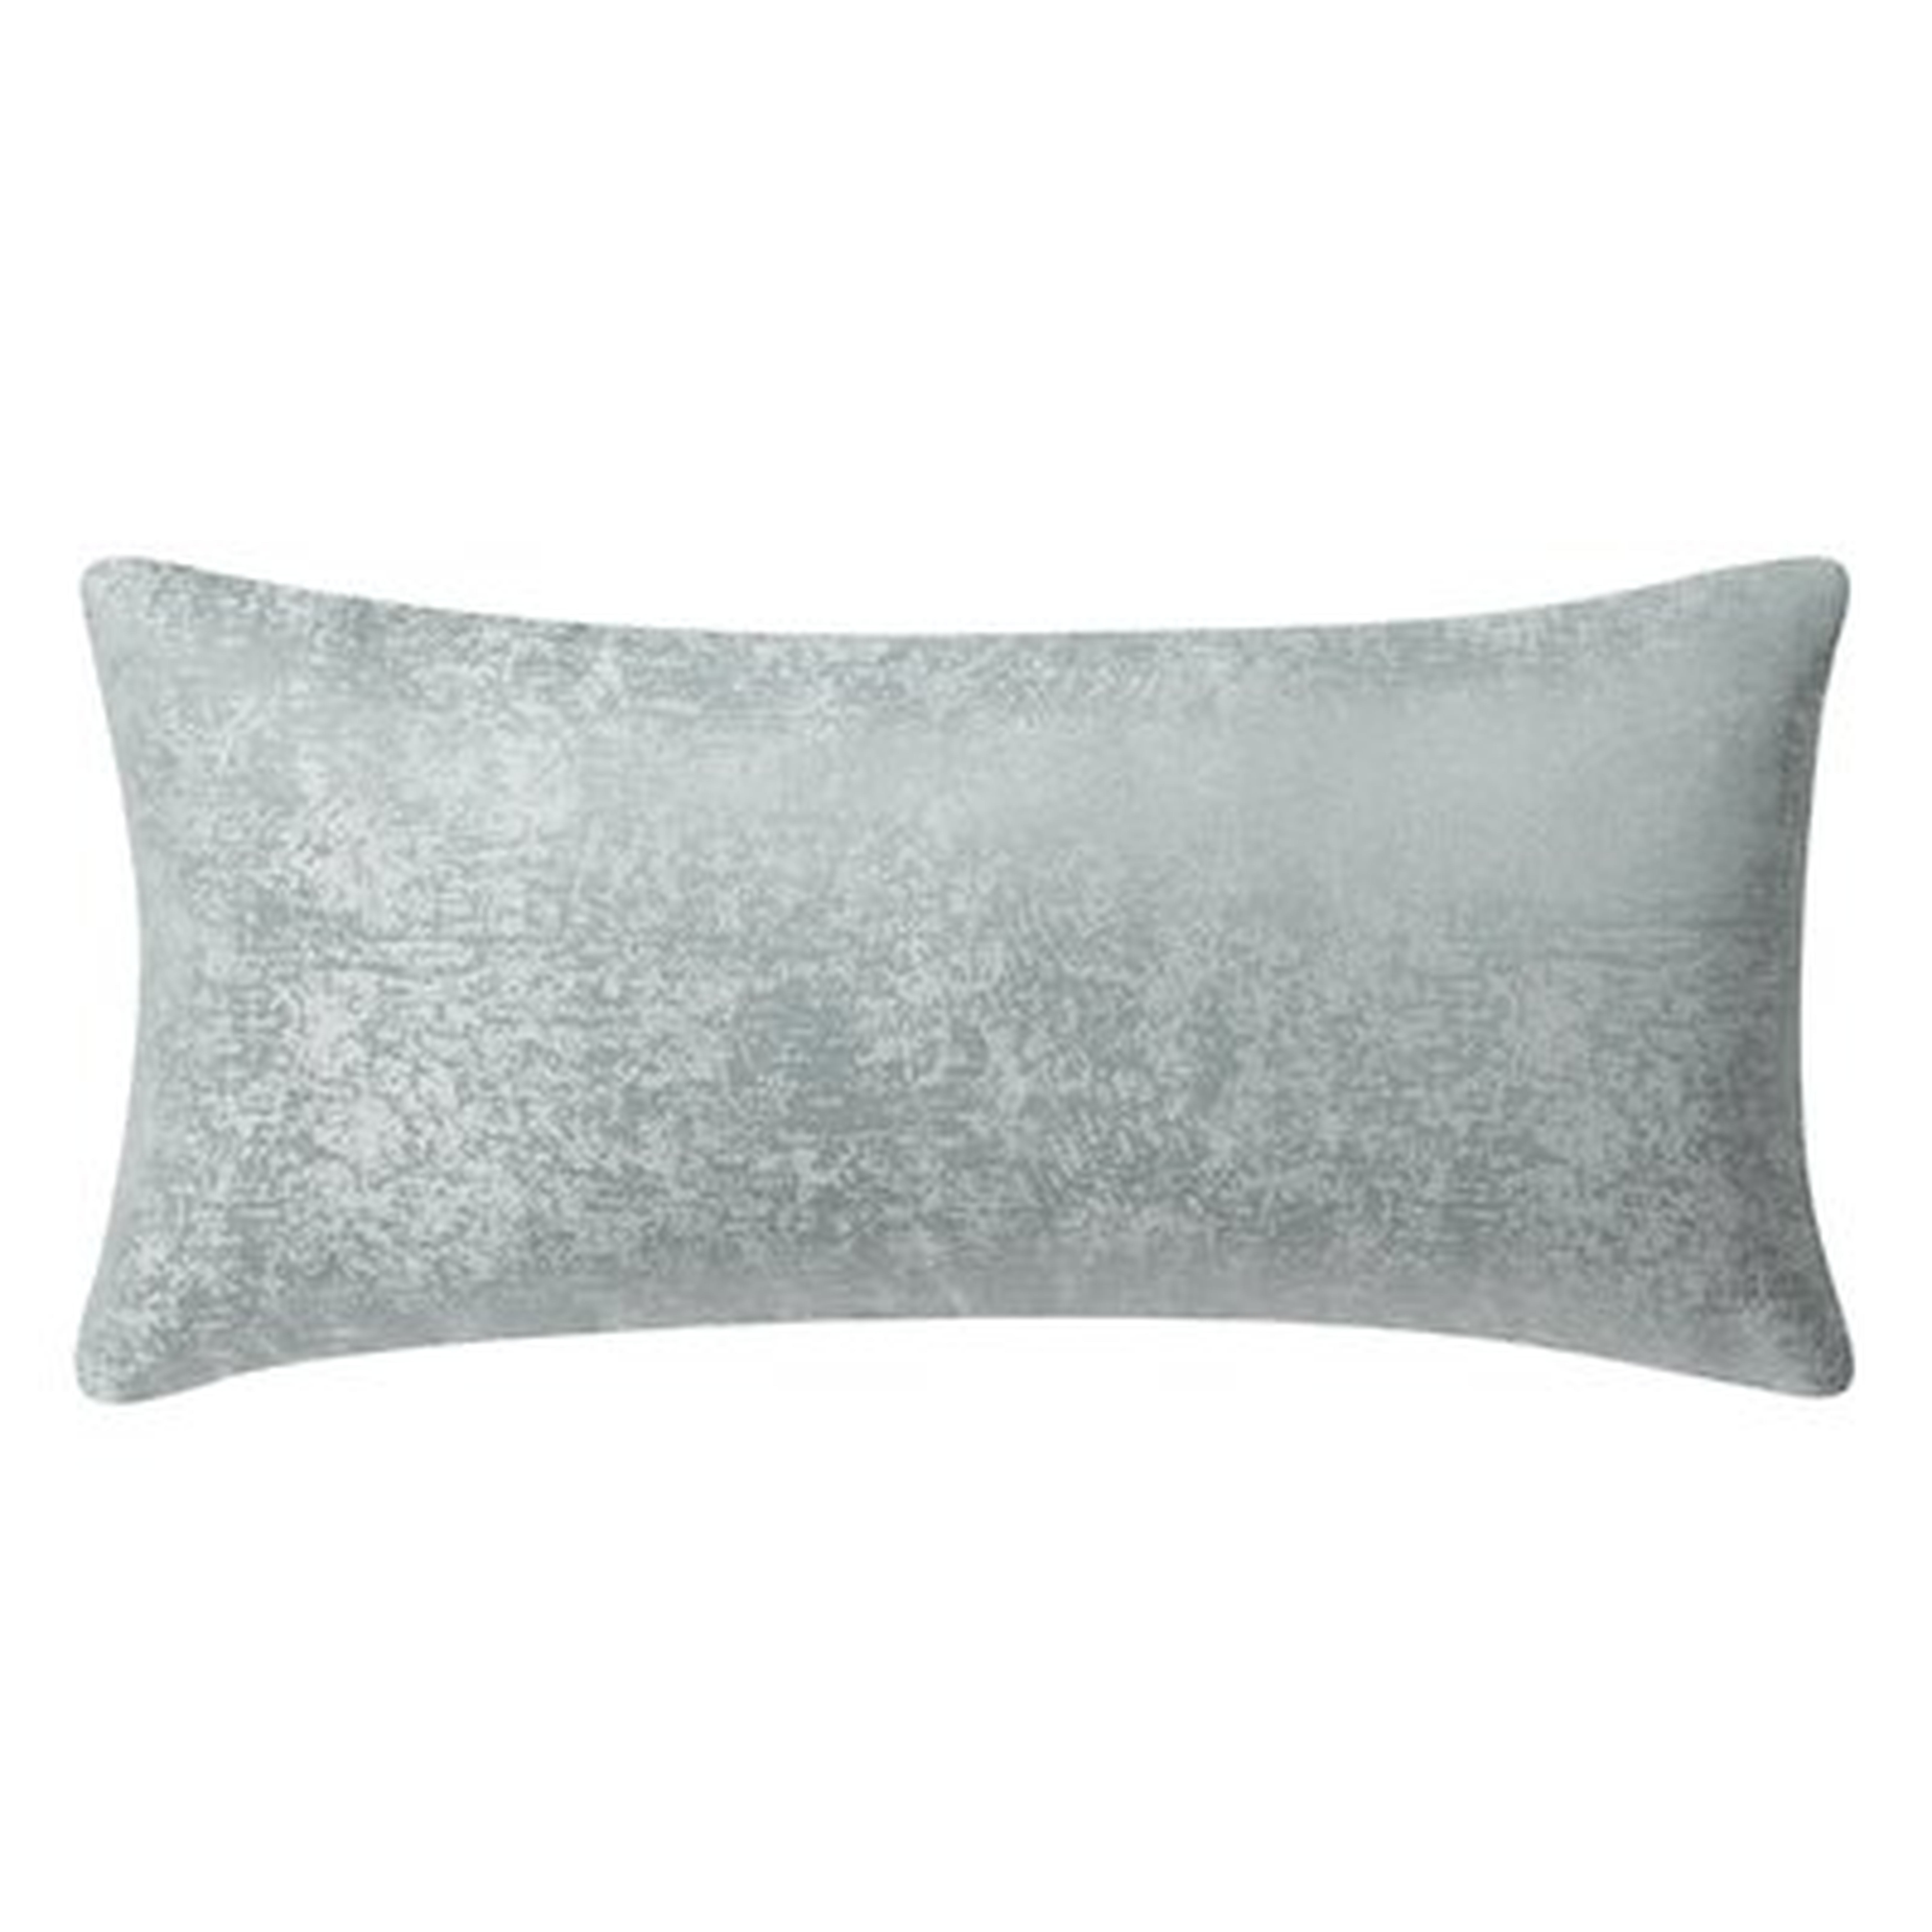 Surrey Lumbar Pillow - Wayfair